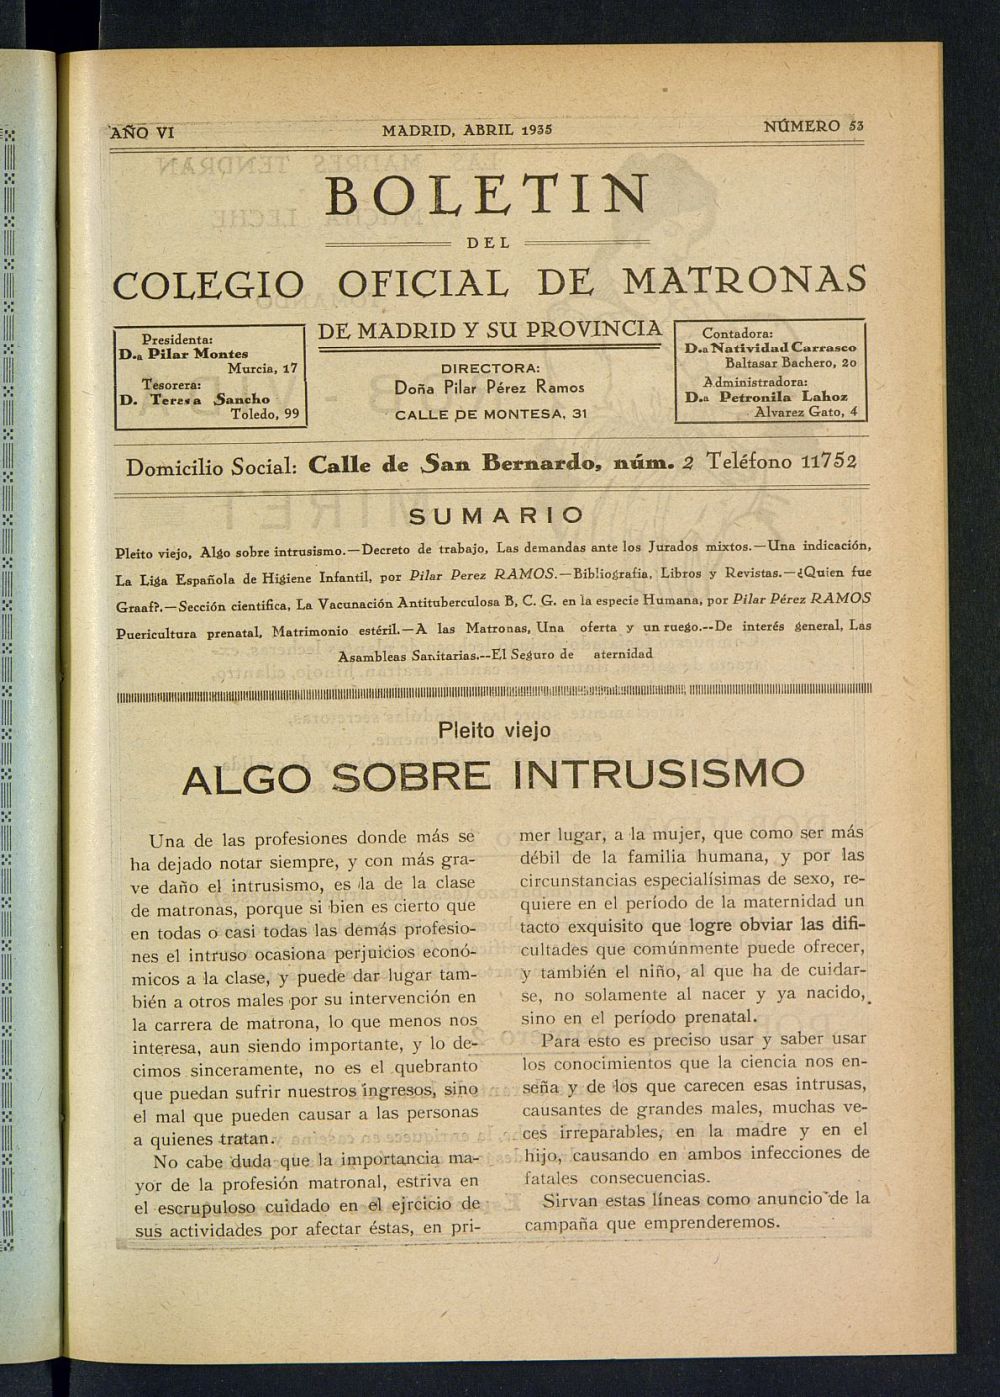 Boletn del Colegio Oficial de Matronas de Madrid y su Provincia de abril de 1935